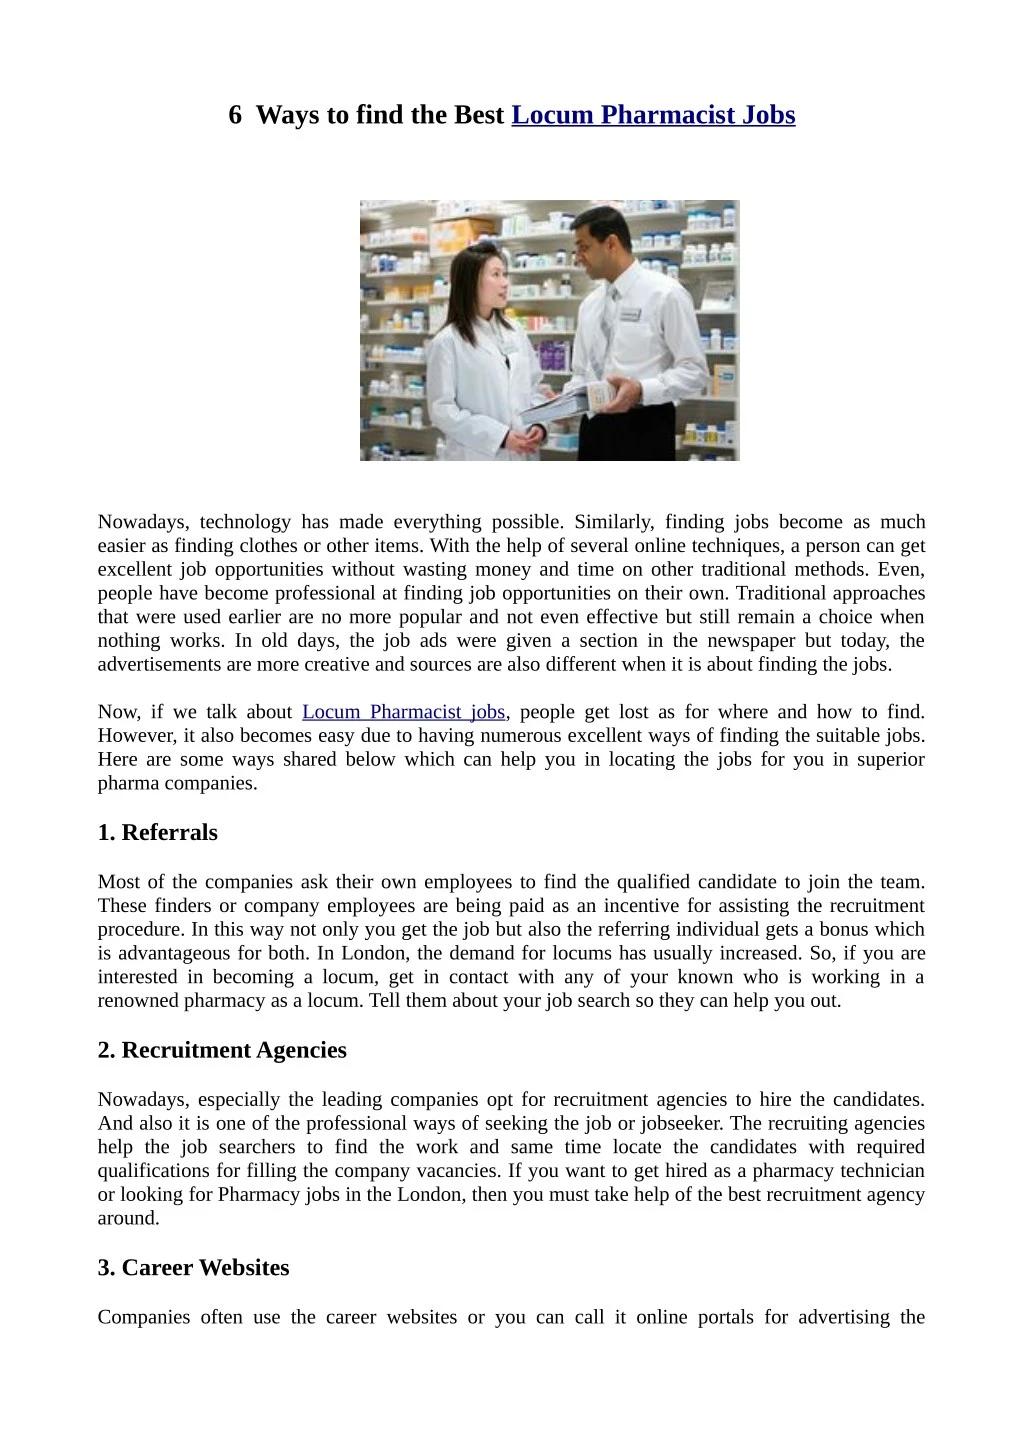 6 ways to find the best locum pharmacist jobs